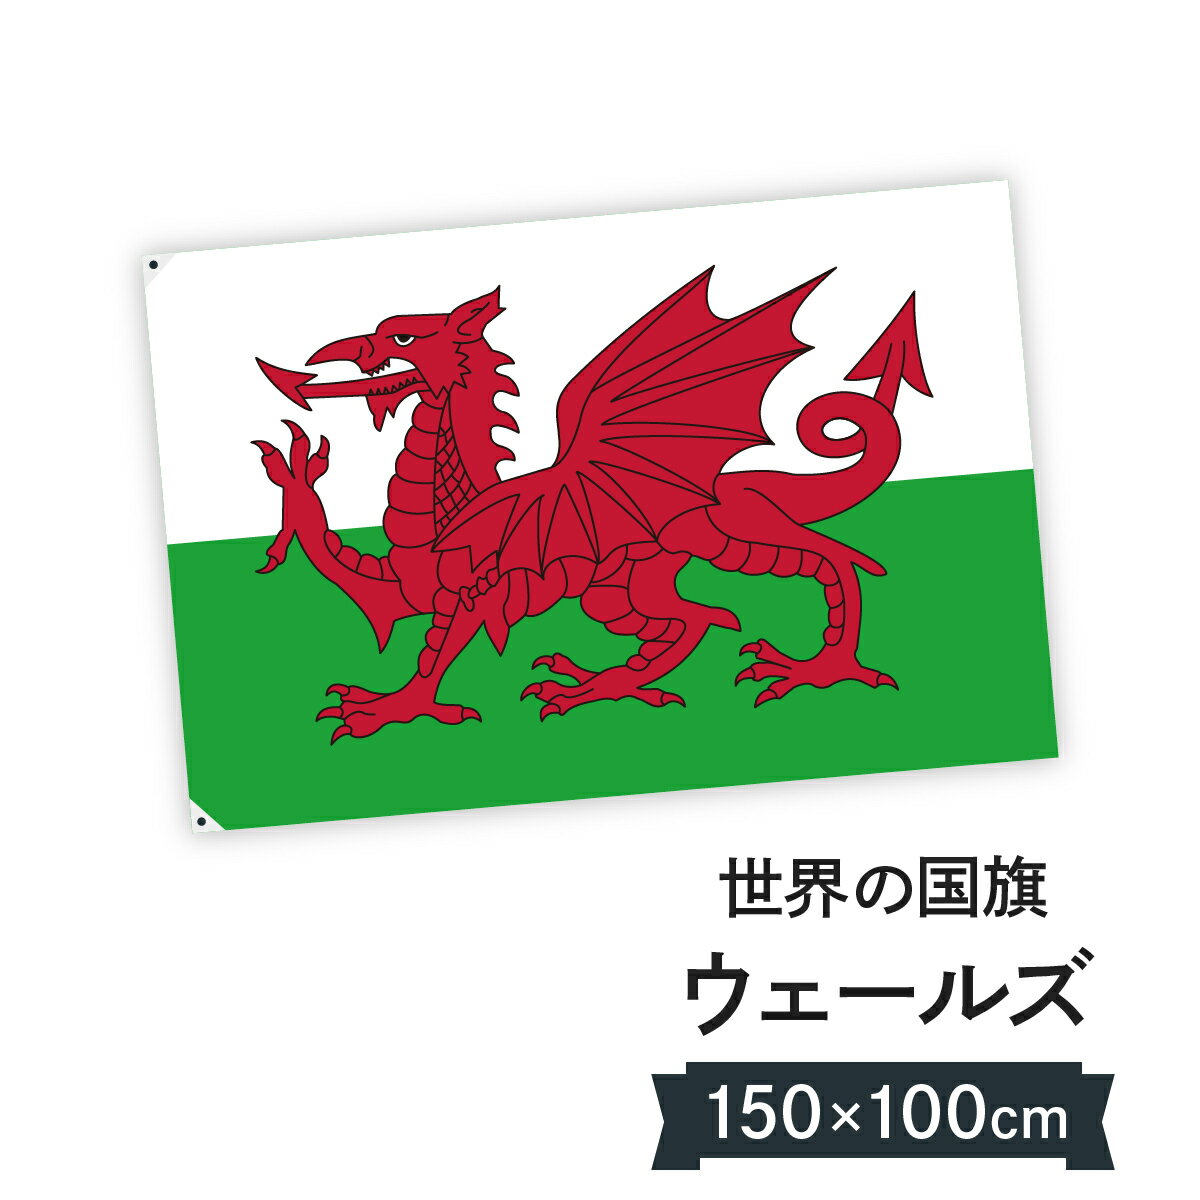 【送料無料】 国旗 ガーンジー島 イギリス 150cm × 90cm 特大 フラッグ 【受注生産】